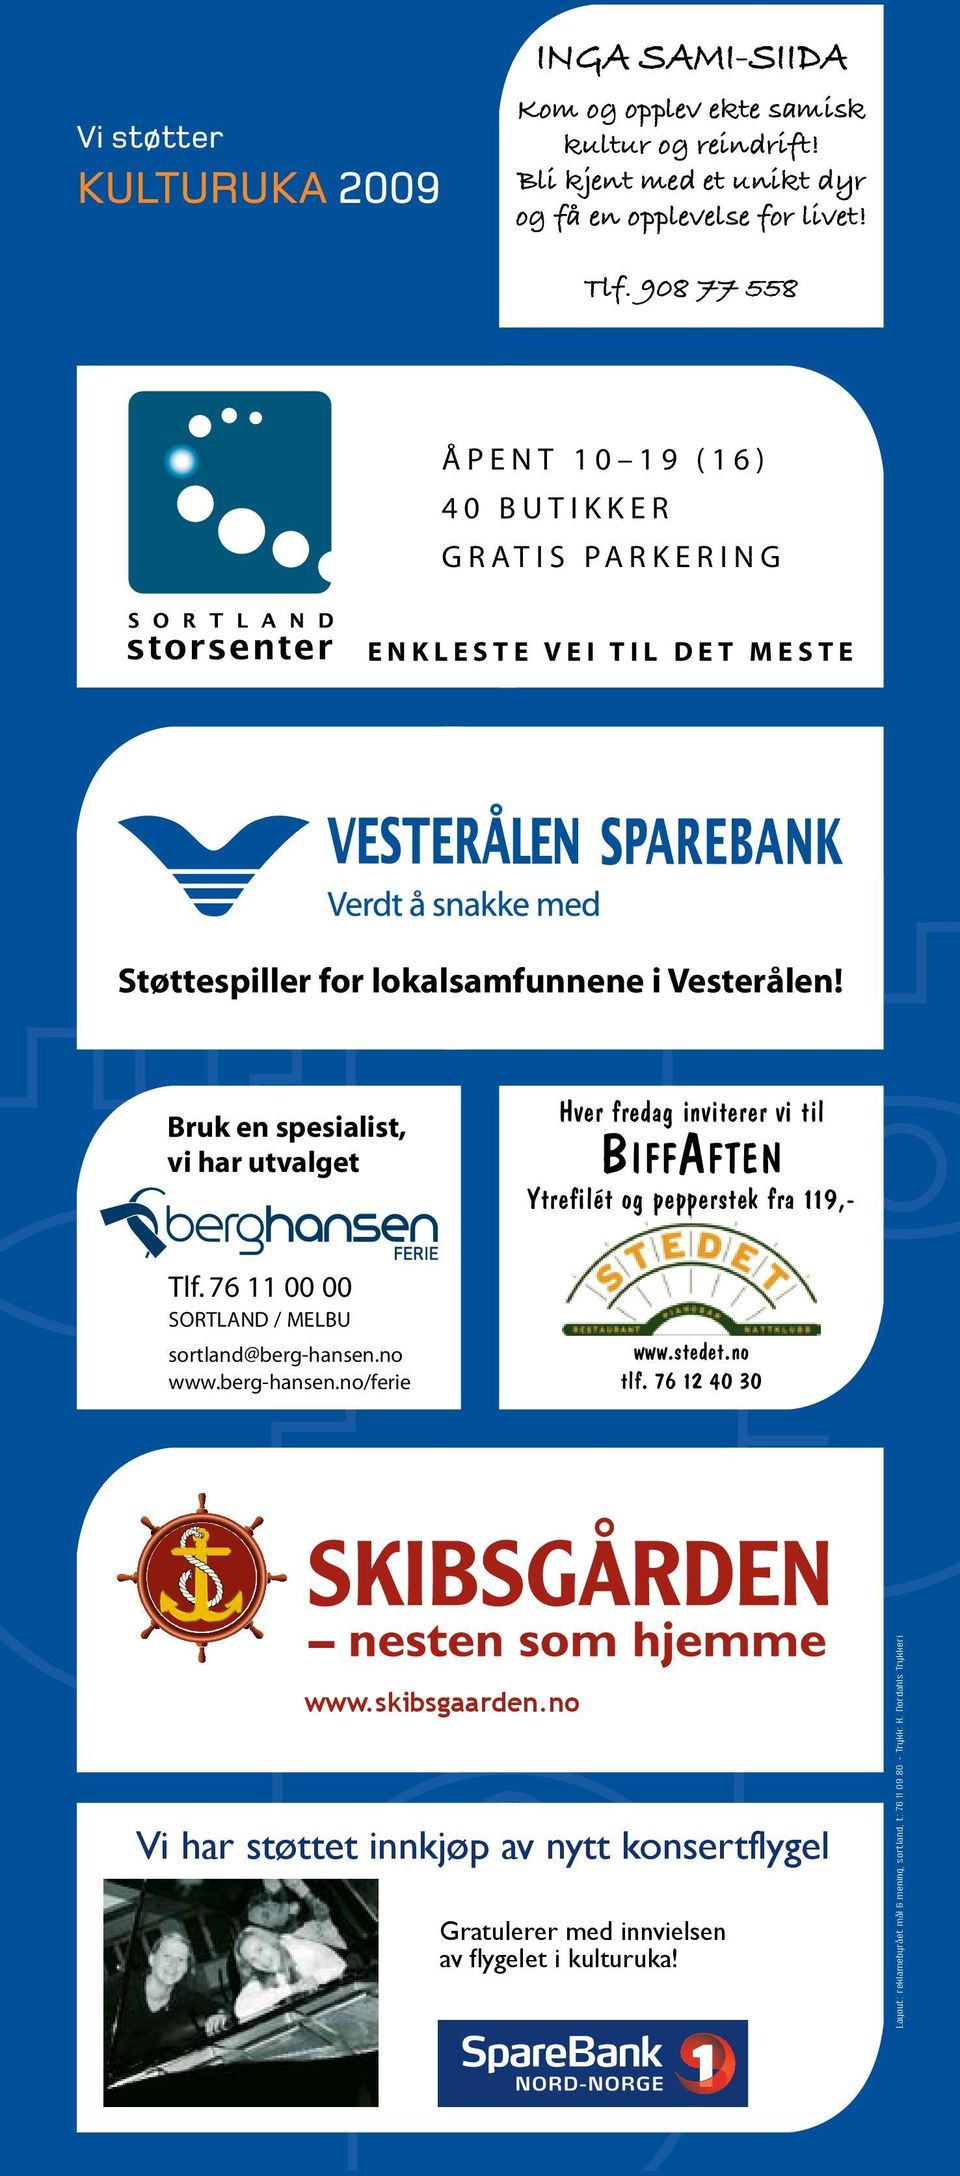 For SpareBank 1 Nord-Norge er ikke sparsommelig. Deler av vårt overskudd går tilbake til lokalsamfunnet i form av sponsing og gavefond. Denne holdningen har vi hatt siden 1800-tallet.